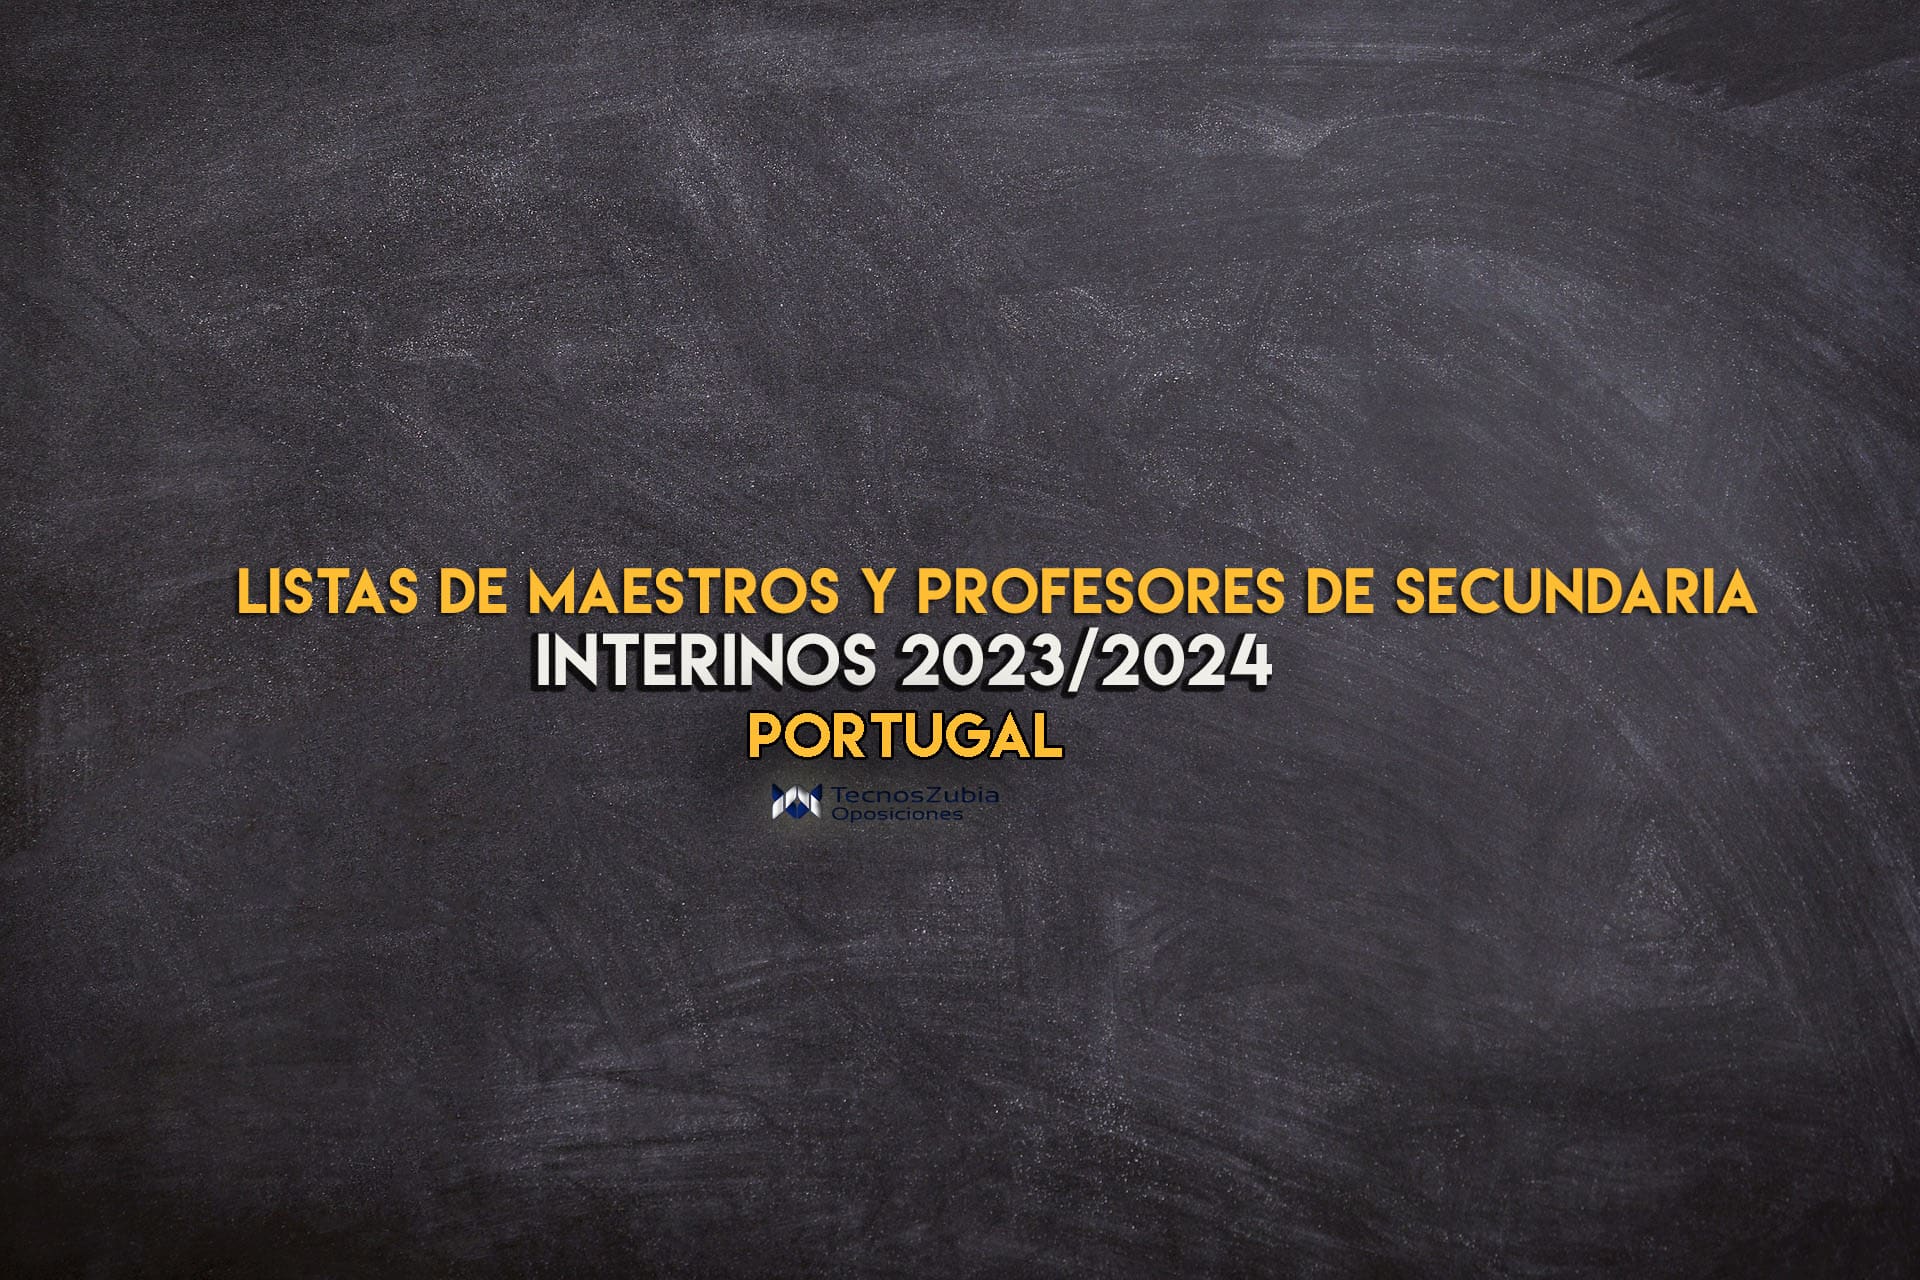 Listas de maestros y profesores de secundaria INTERINOS Portugal 2023-2024